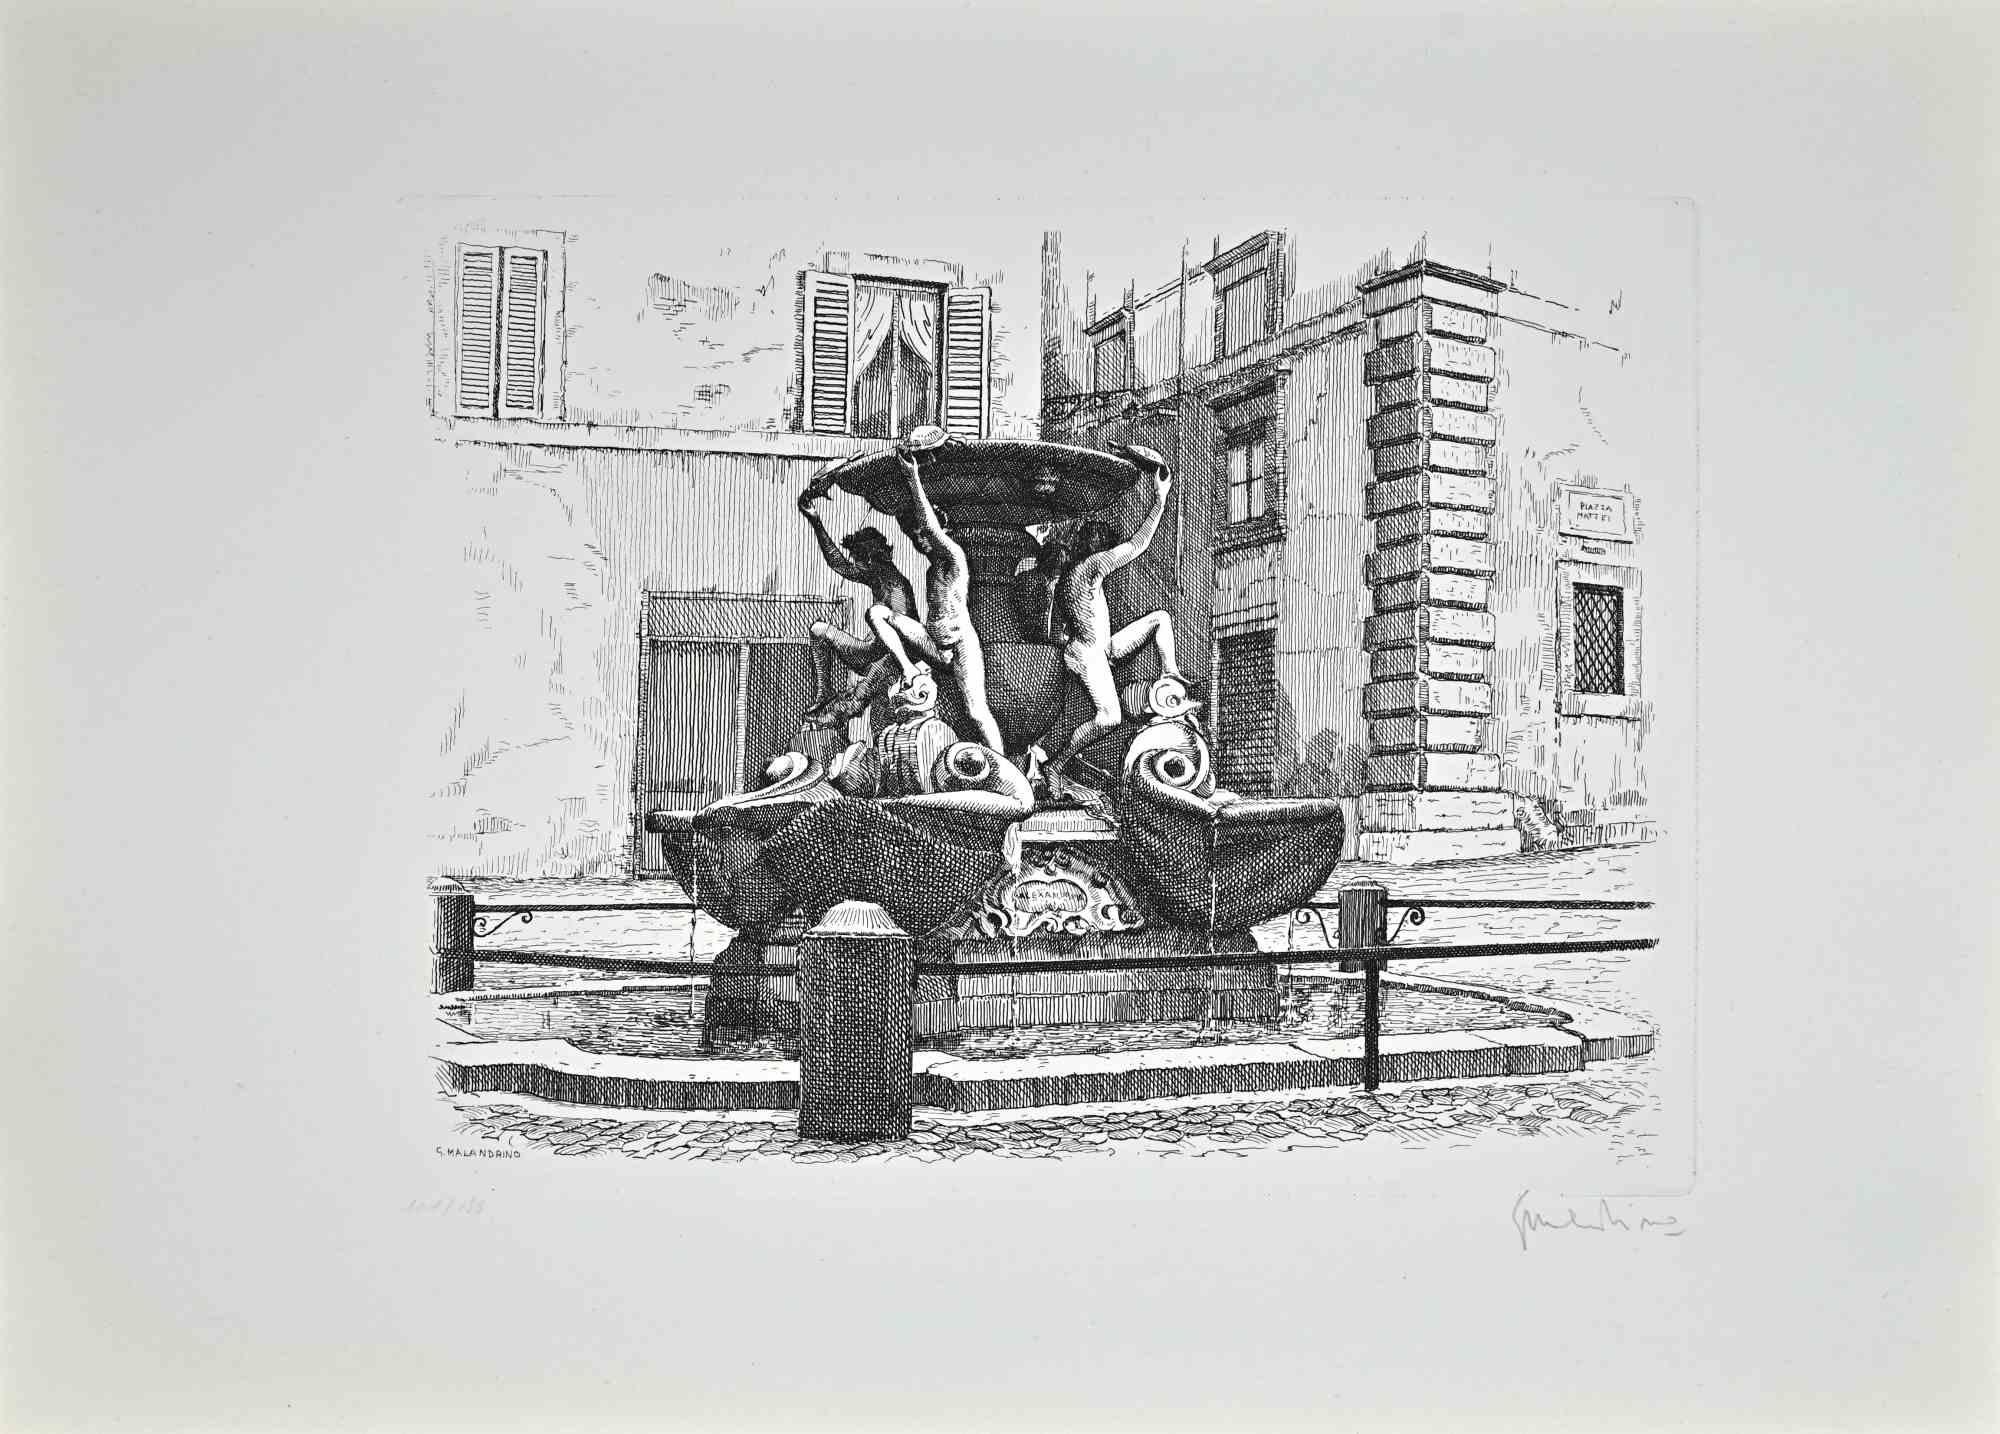 Fountain of the Turtles ist ein Kunstwerk von Giuseppe Malandrino.

Druck in Ätztechnik.

Vom Künstler in der rechten unteren Ecke mit Bleistift handsigniert.

Nummerierte Auflage von 199 Exemplaren.

Guter Zustand. 

Dieses Kunstwerk stellt den